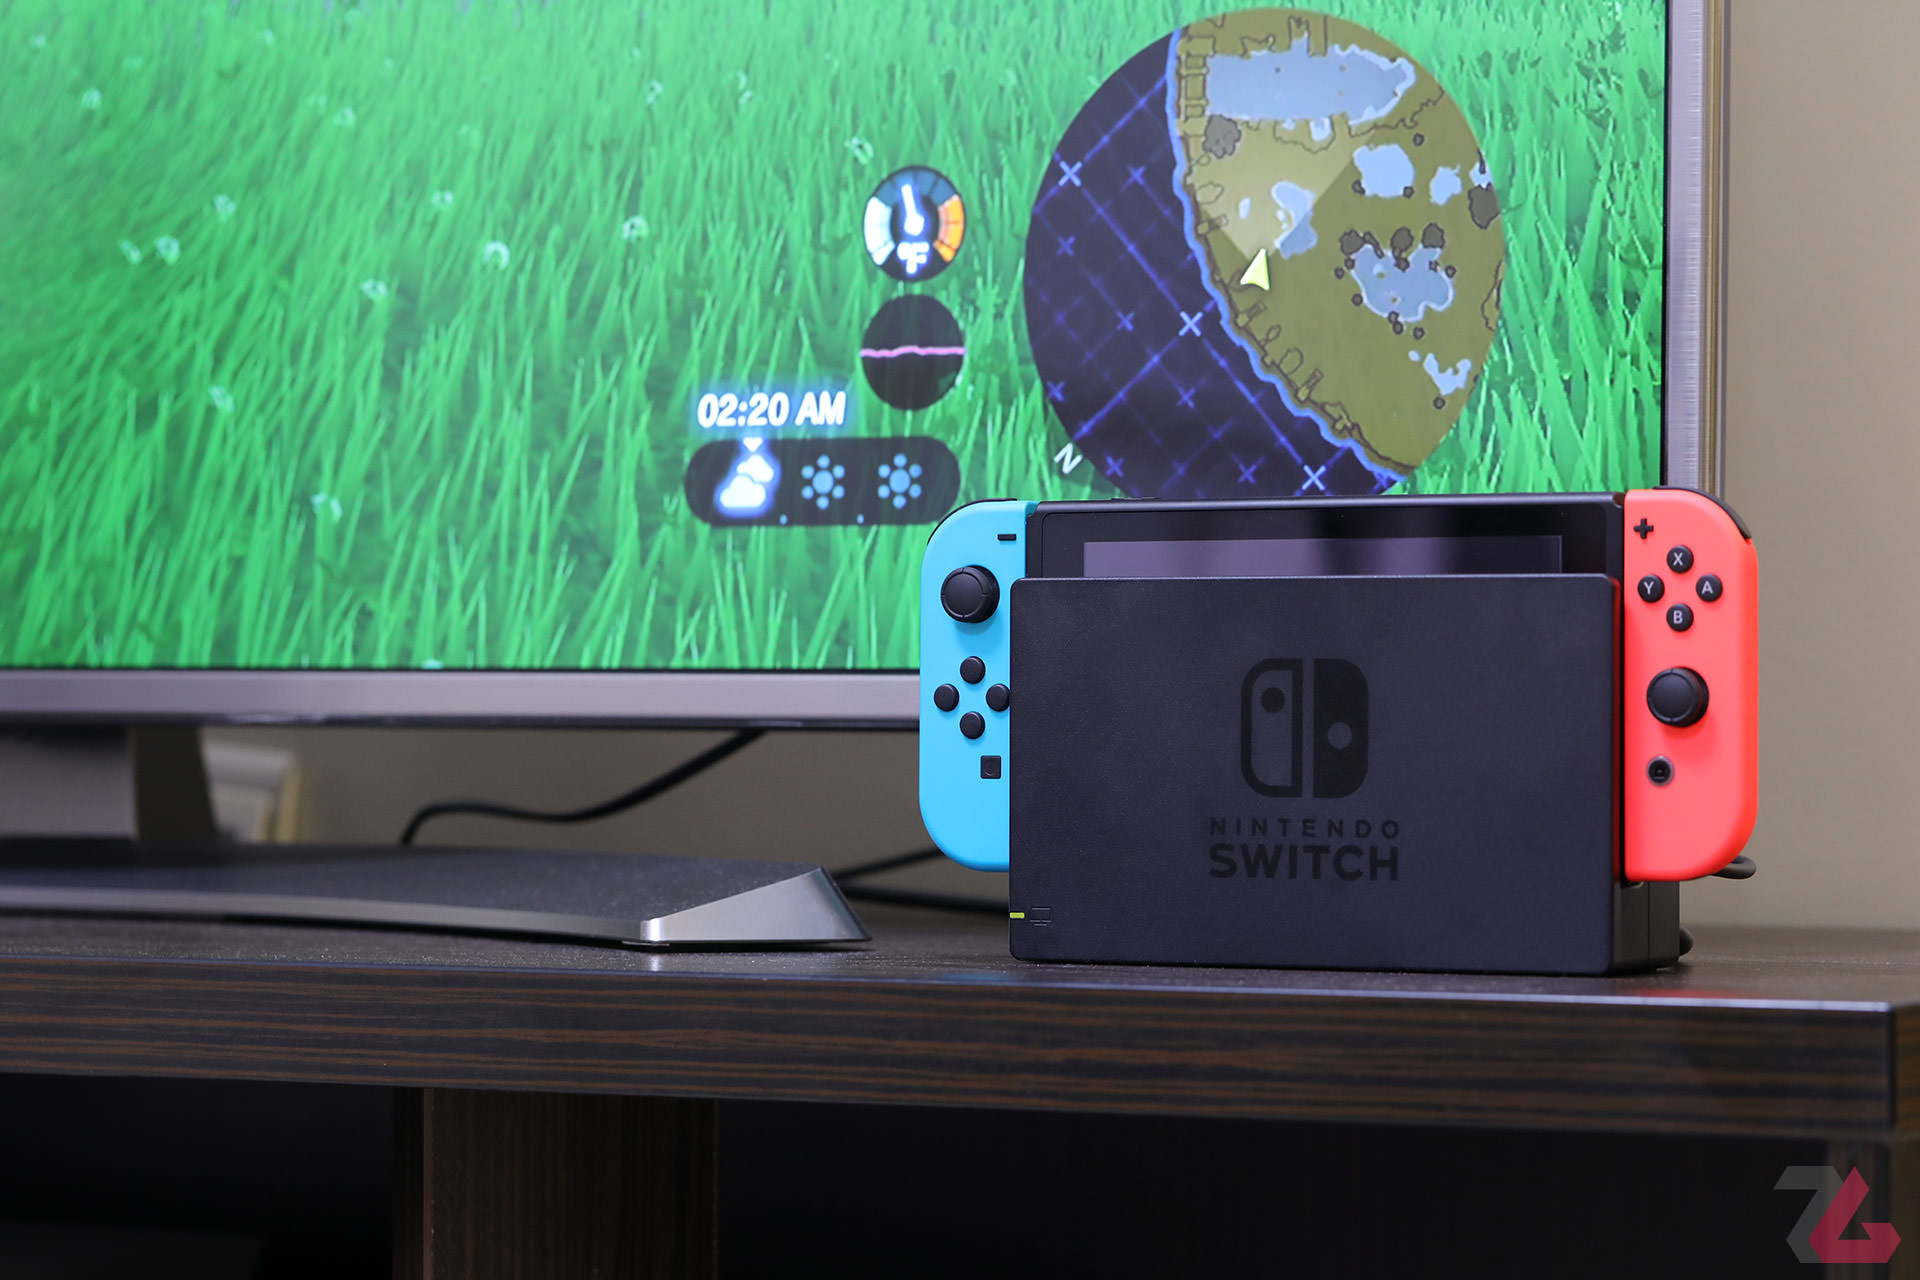 نینتندو سوییچ / Nintendo Switch